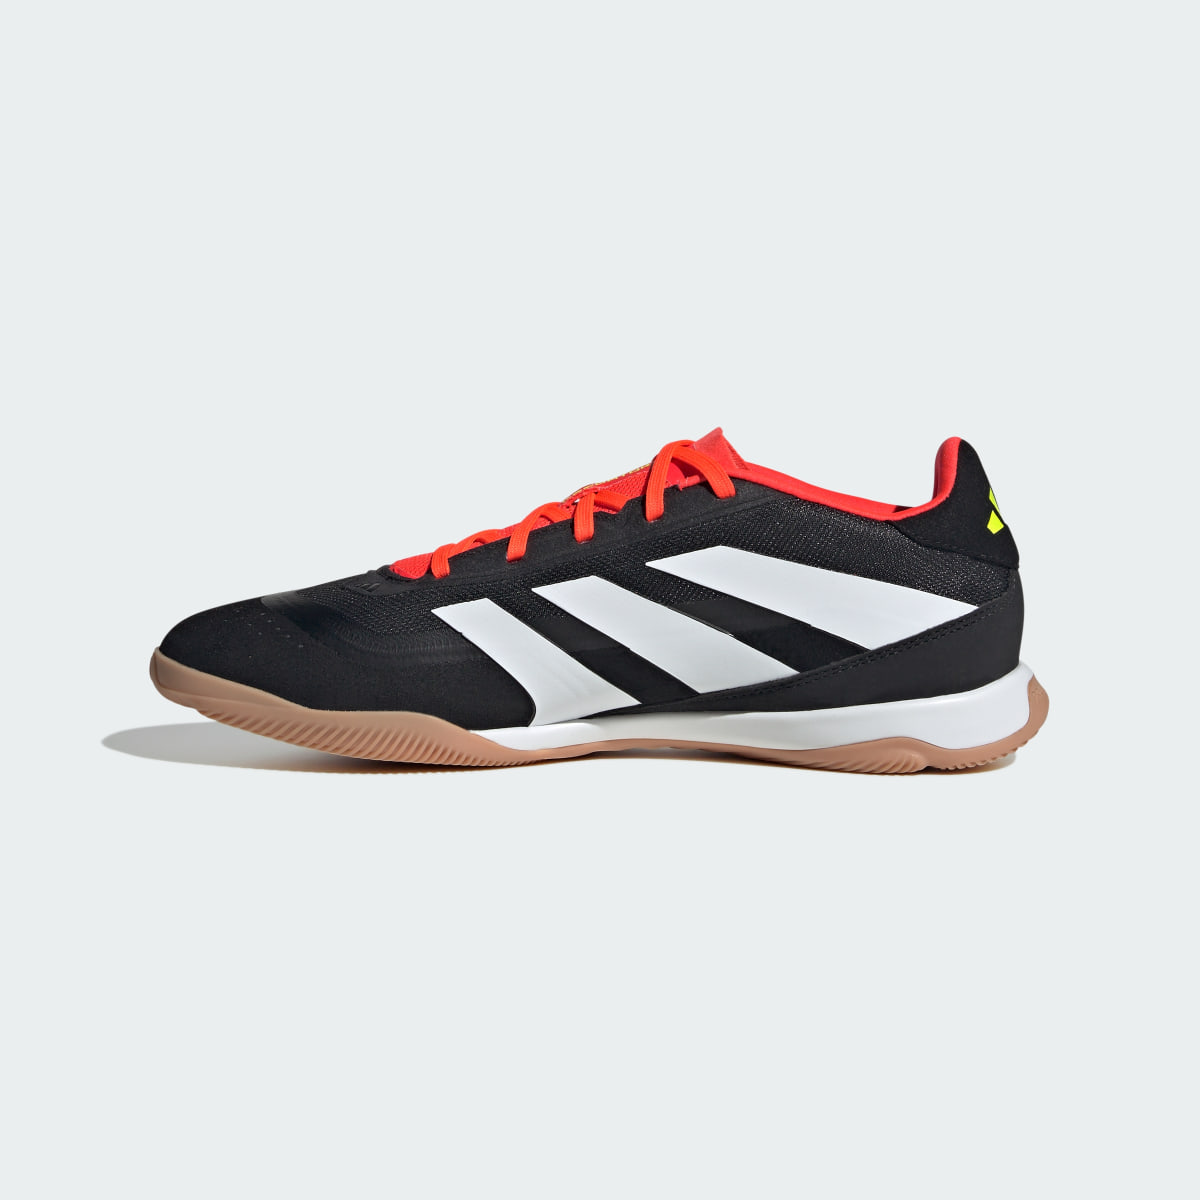 Adidas Predator League Indoor Football Boots. 7